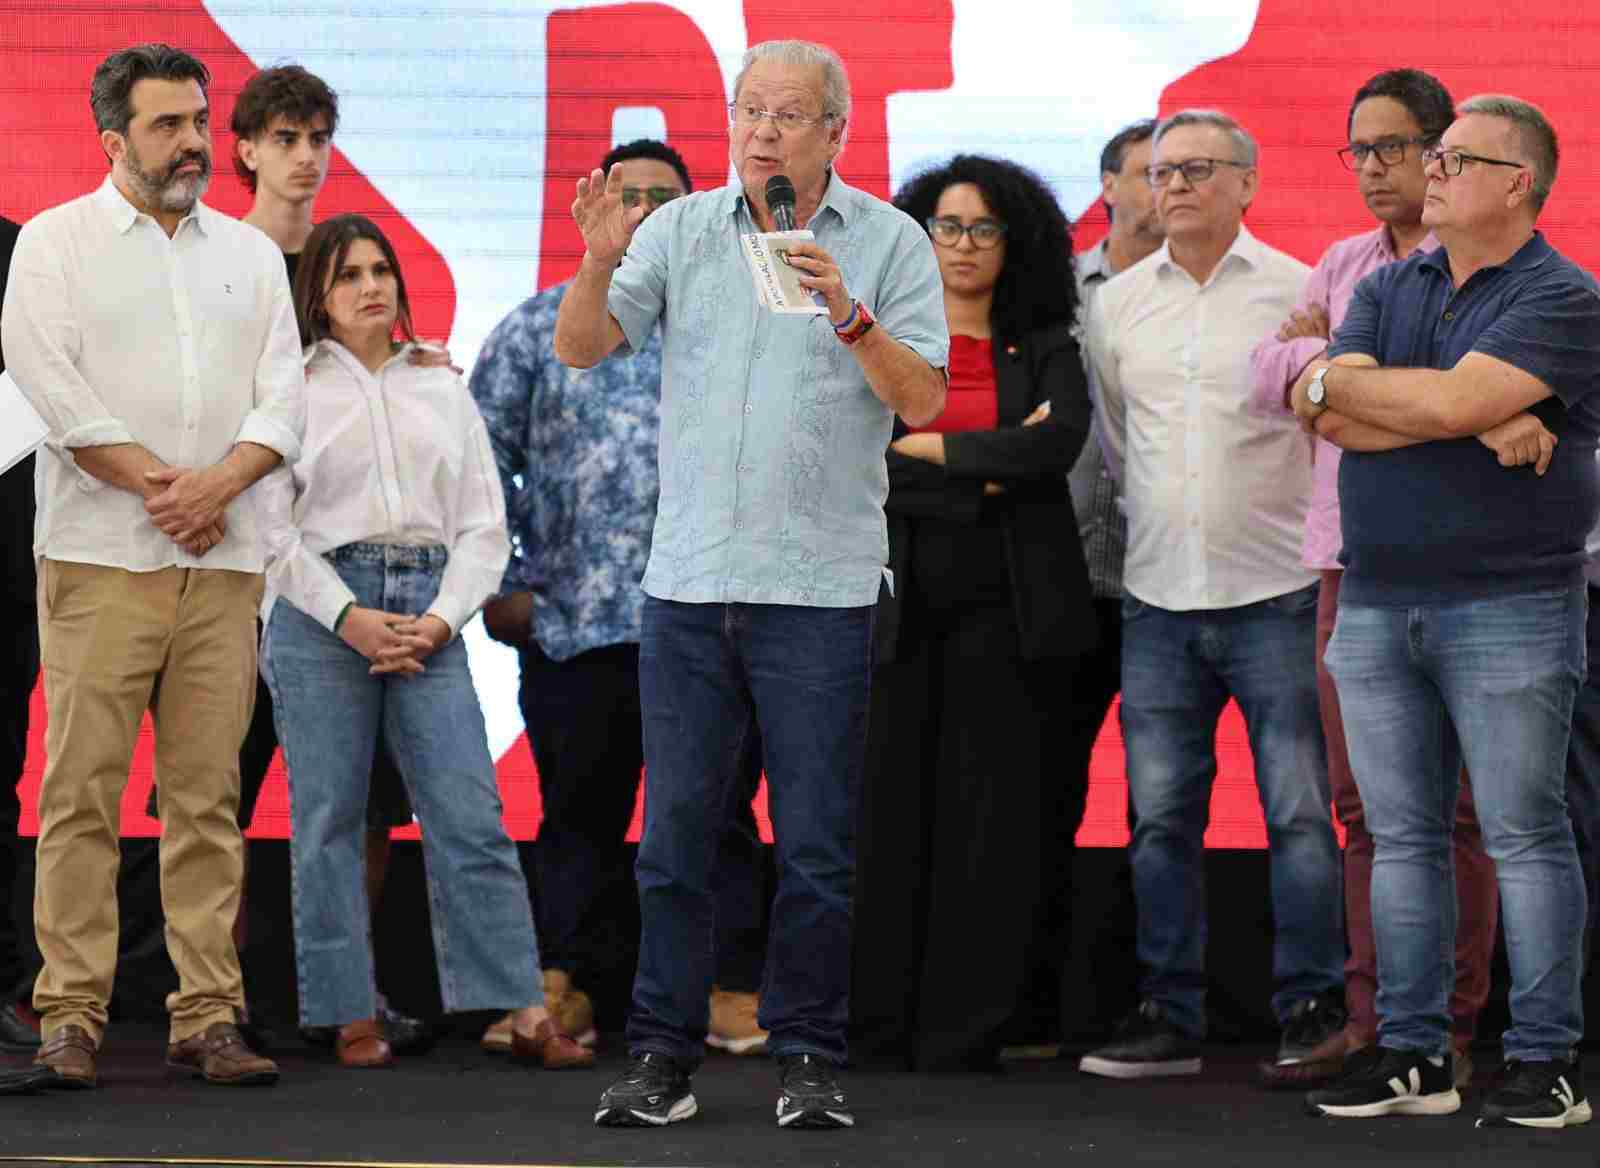 Zé Dirceu em Jundiaí rodeado de apoiadores no lançamento da pré-candidatura de Bocalon à prefeitura de Jundiaí